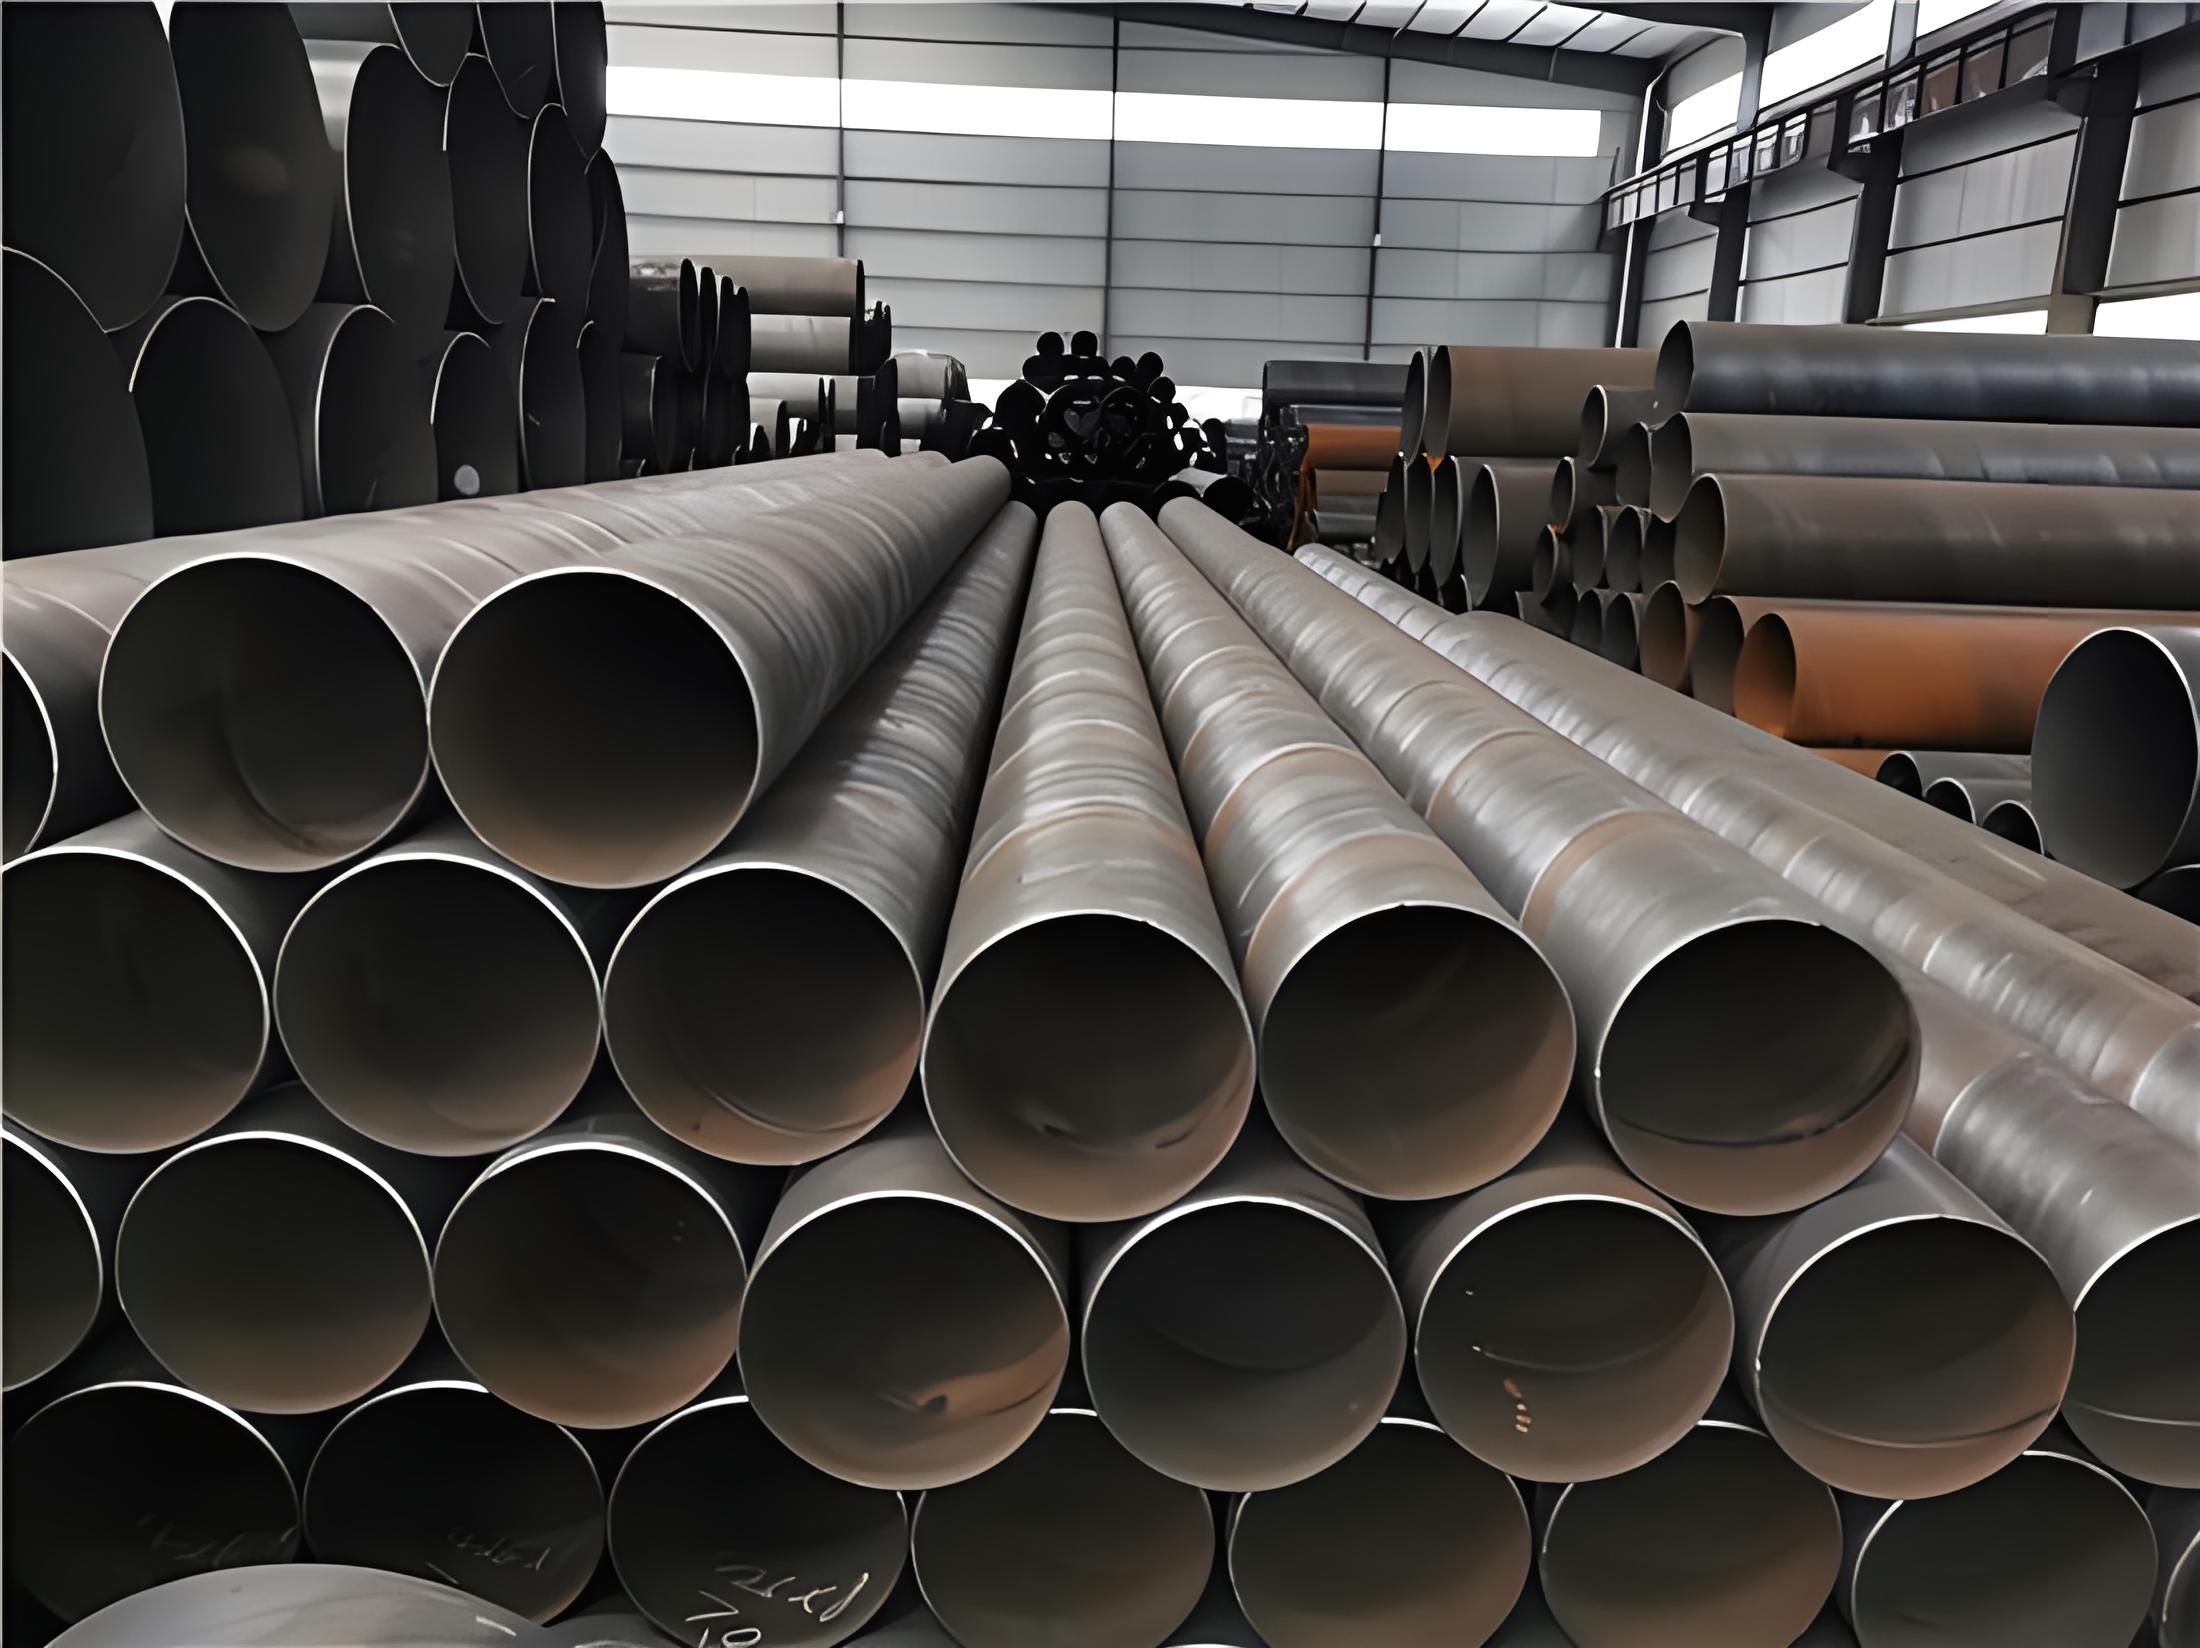 延边朝鲜族螺旋钢管现代工业建设的坚实基石